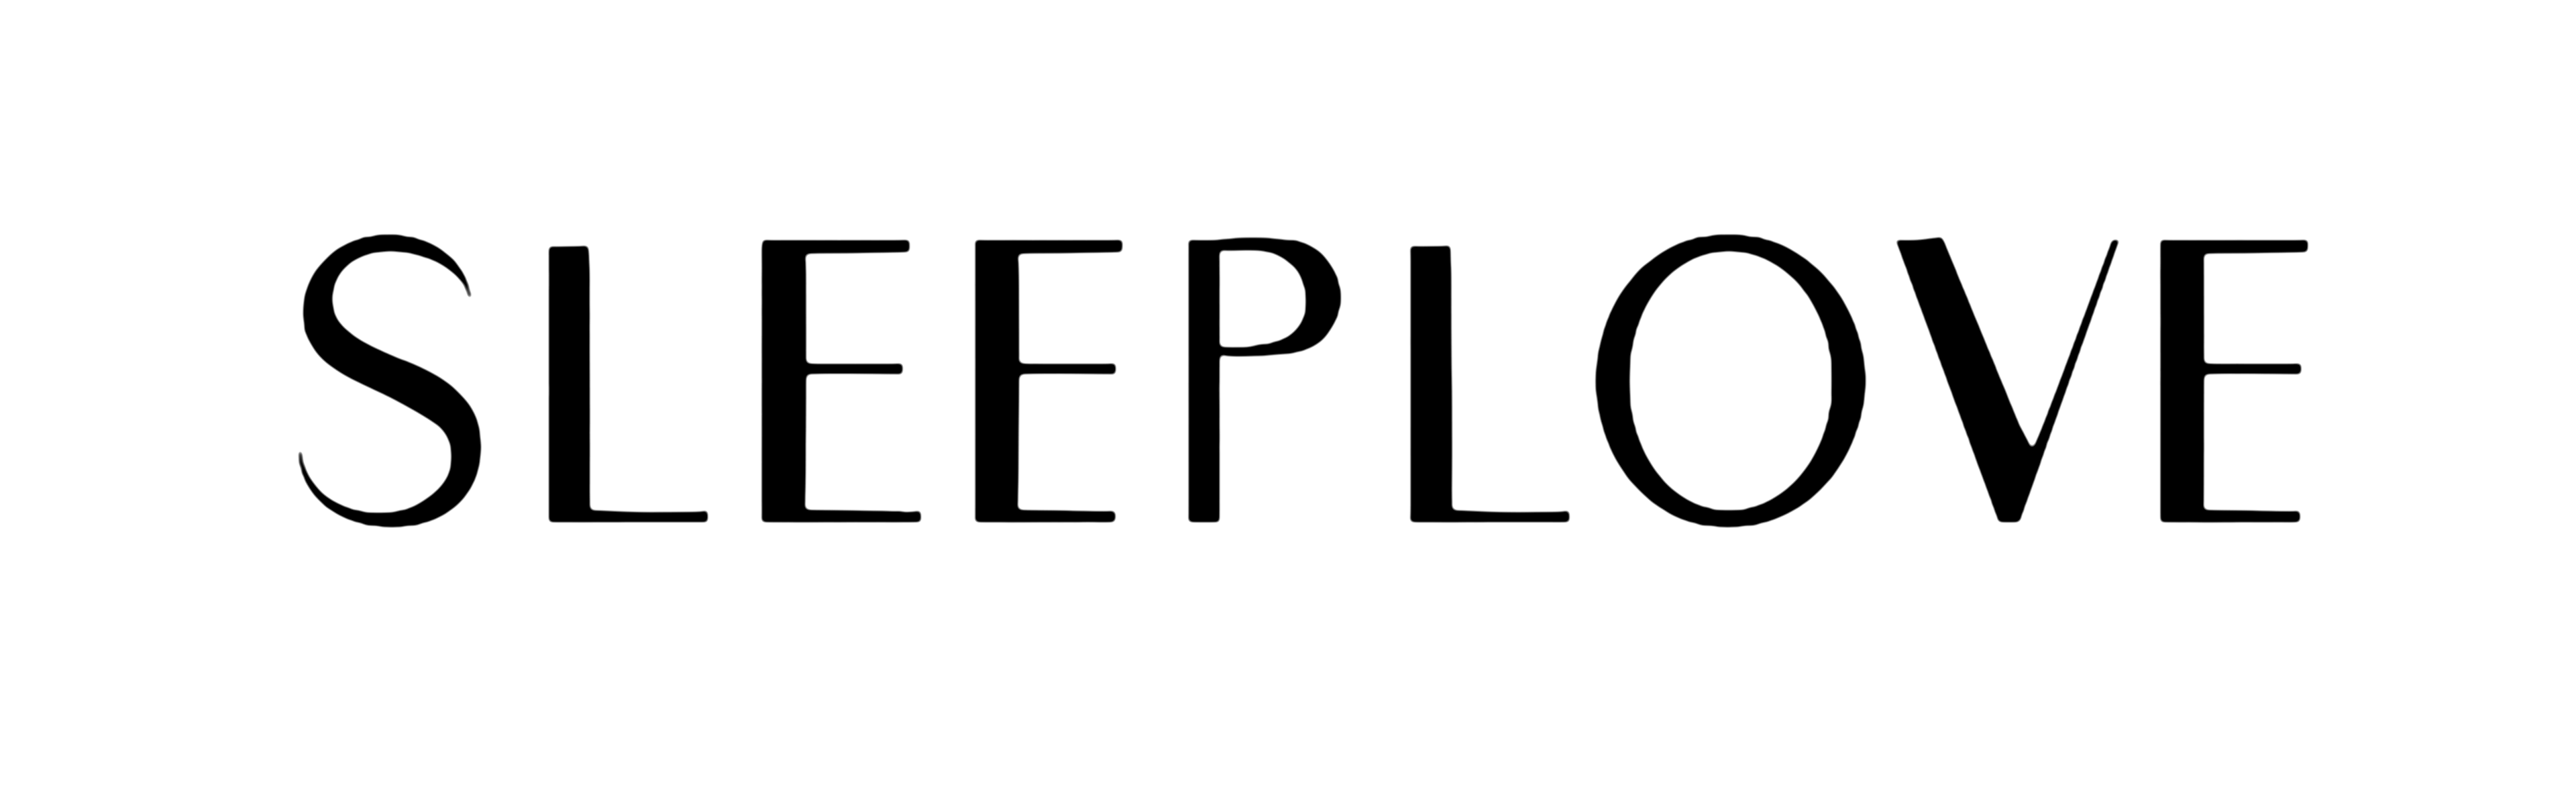 Sleeplove